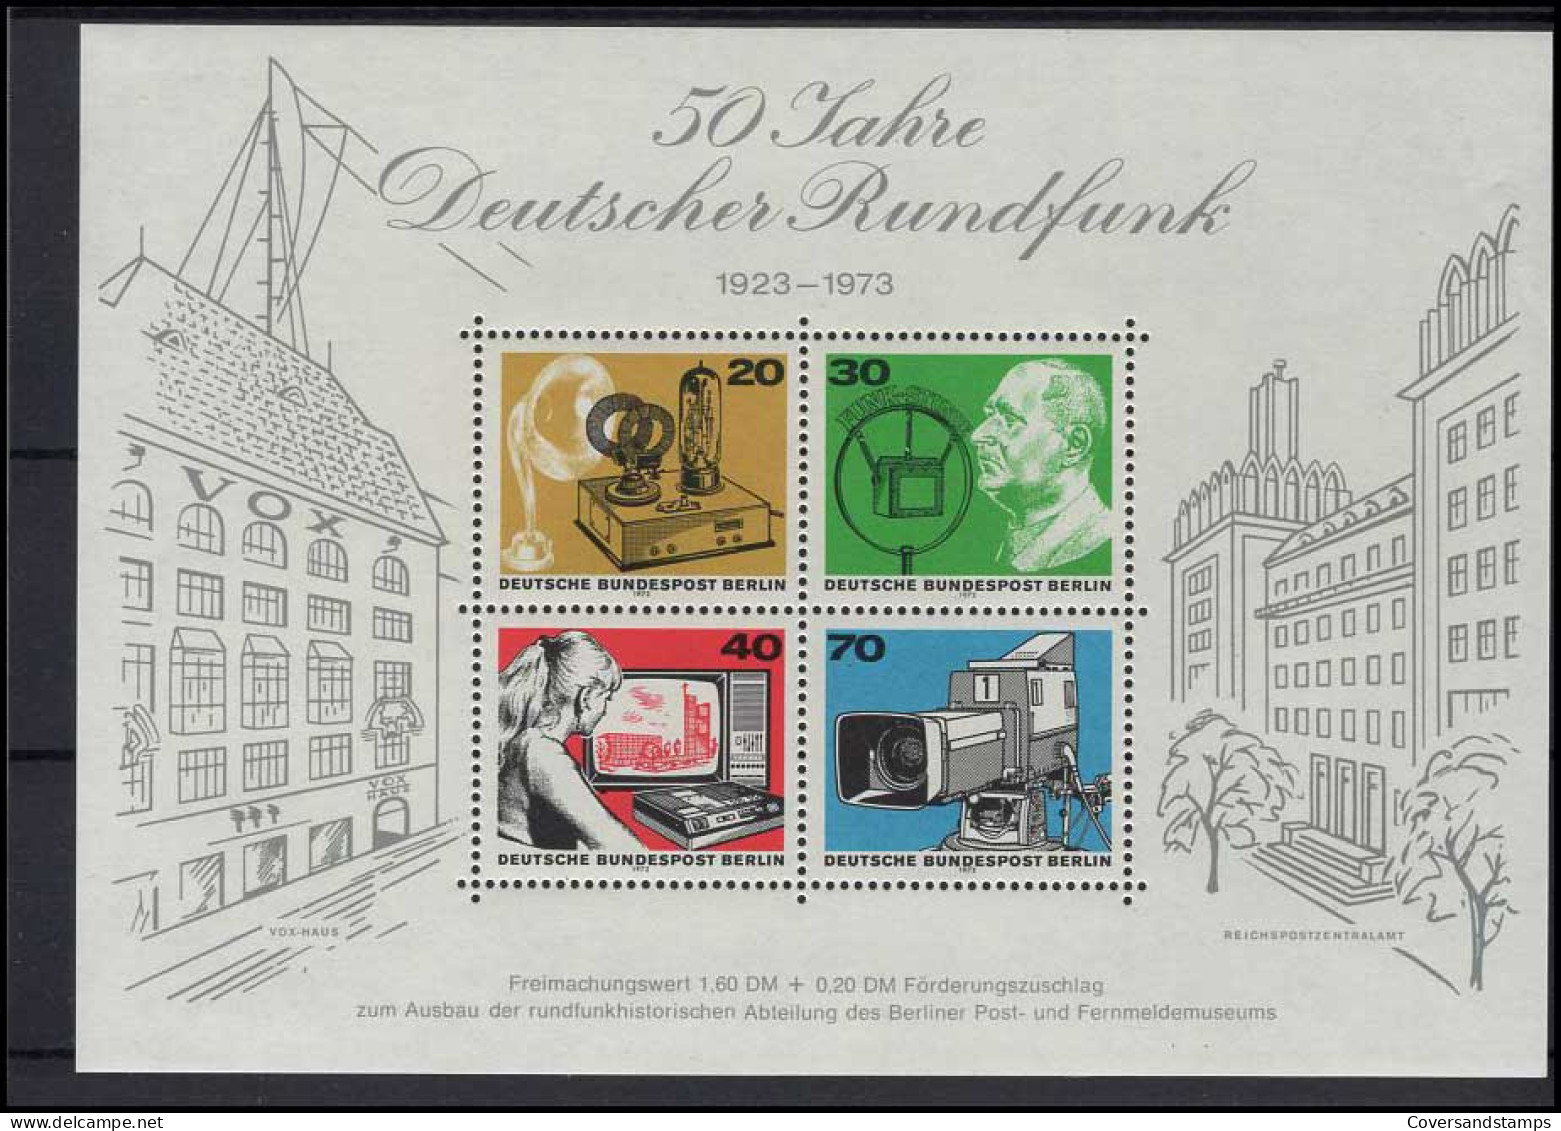   Bundespost Berlin - Volledig Jaar / Jahrgang 1973  MNH - Neufs